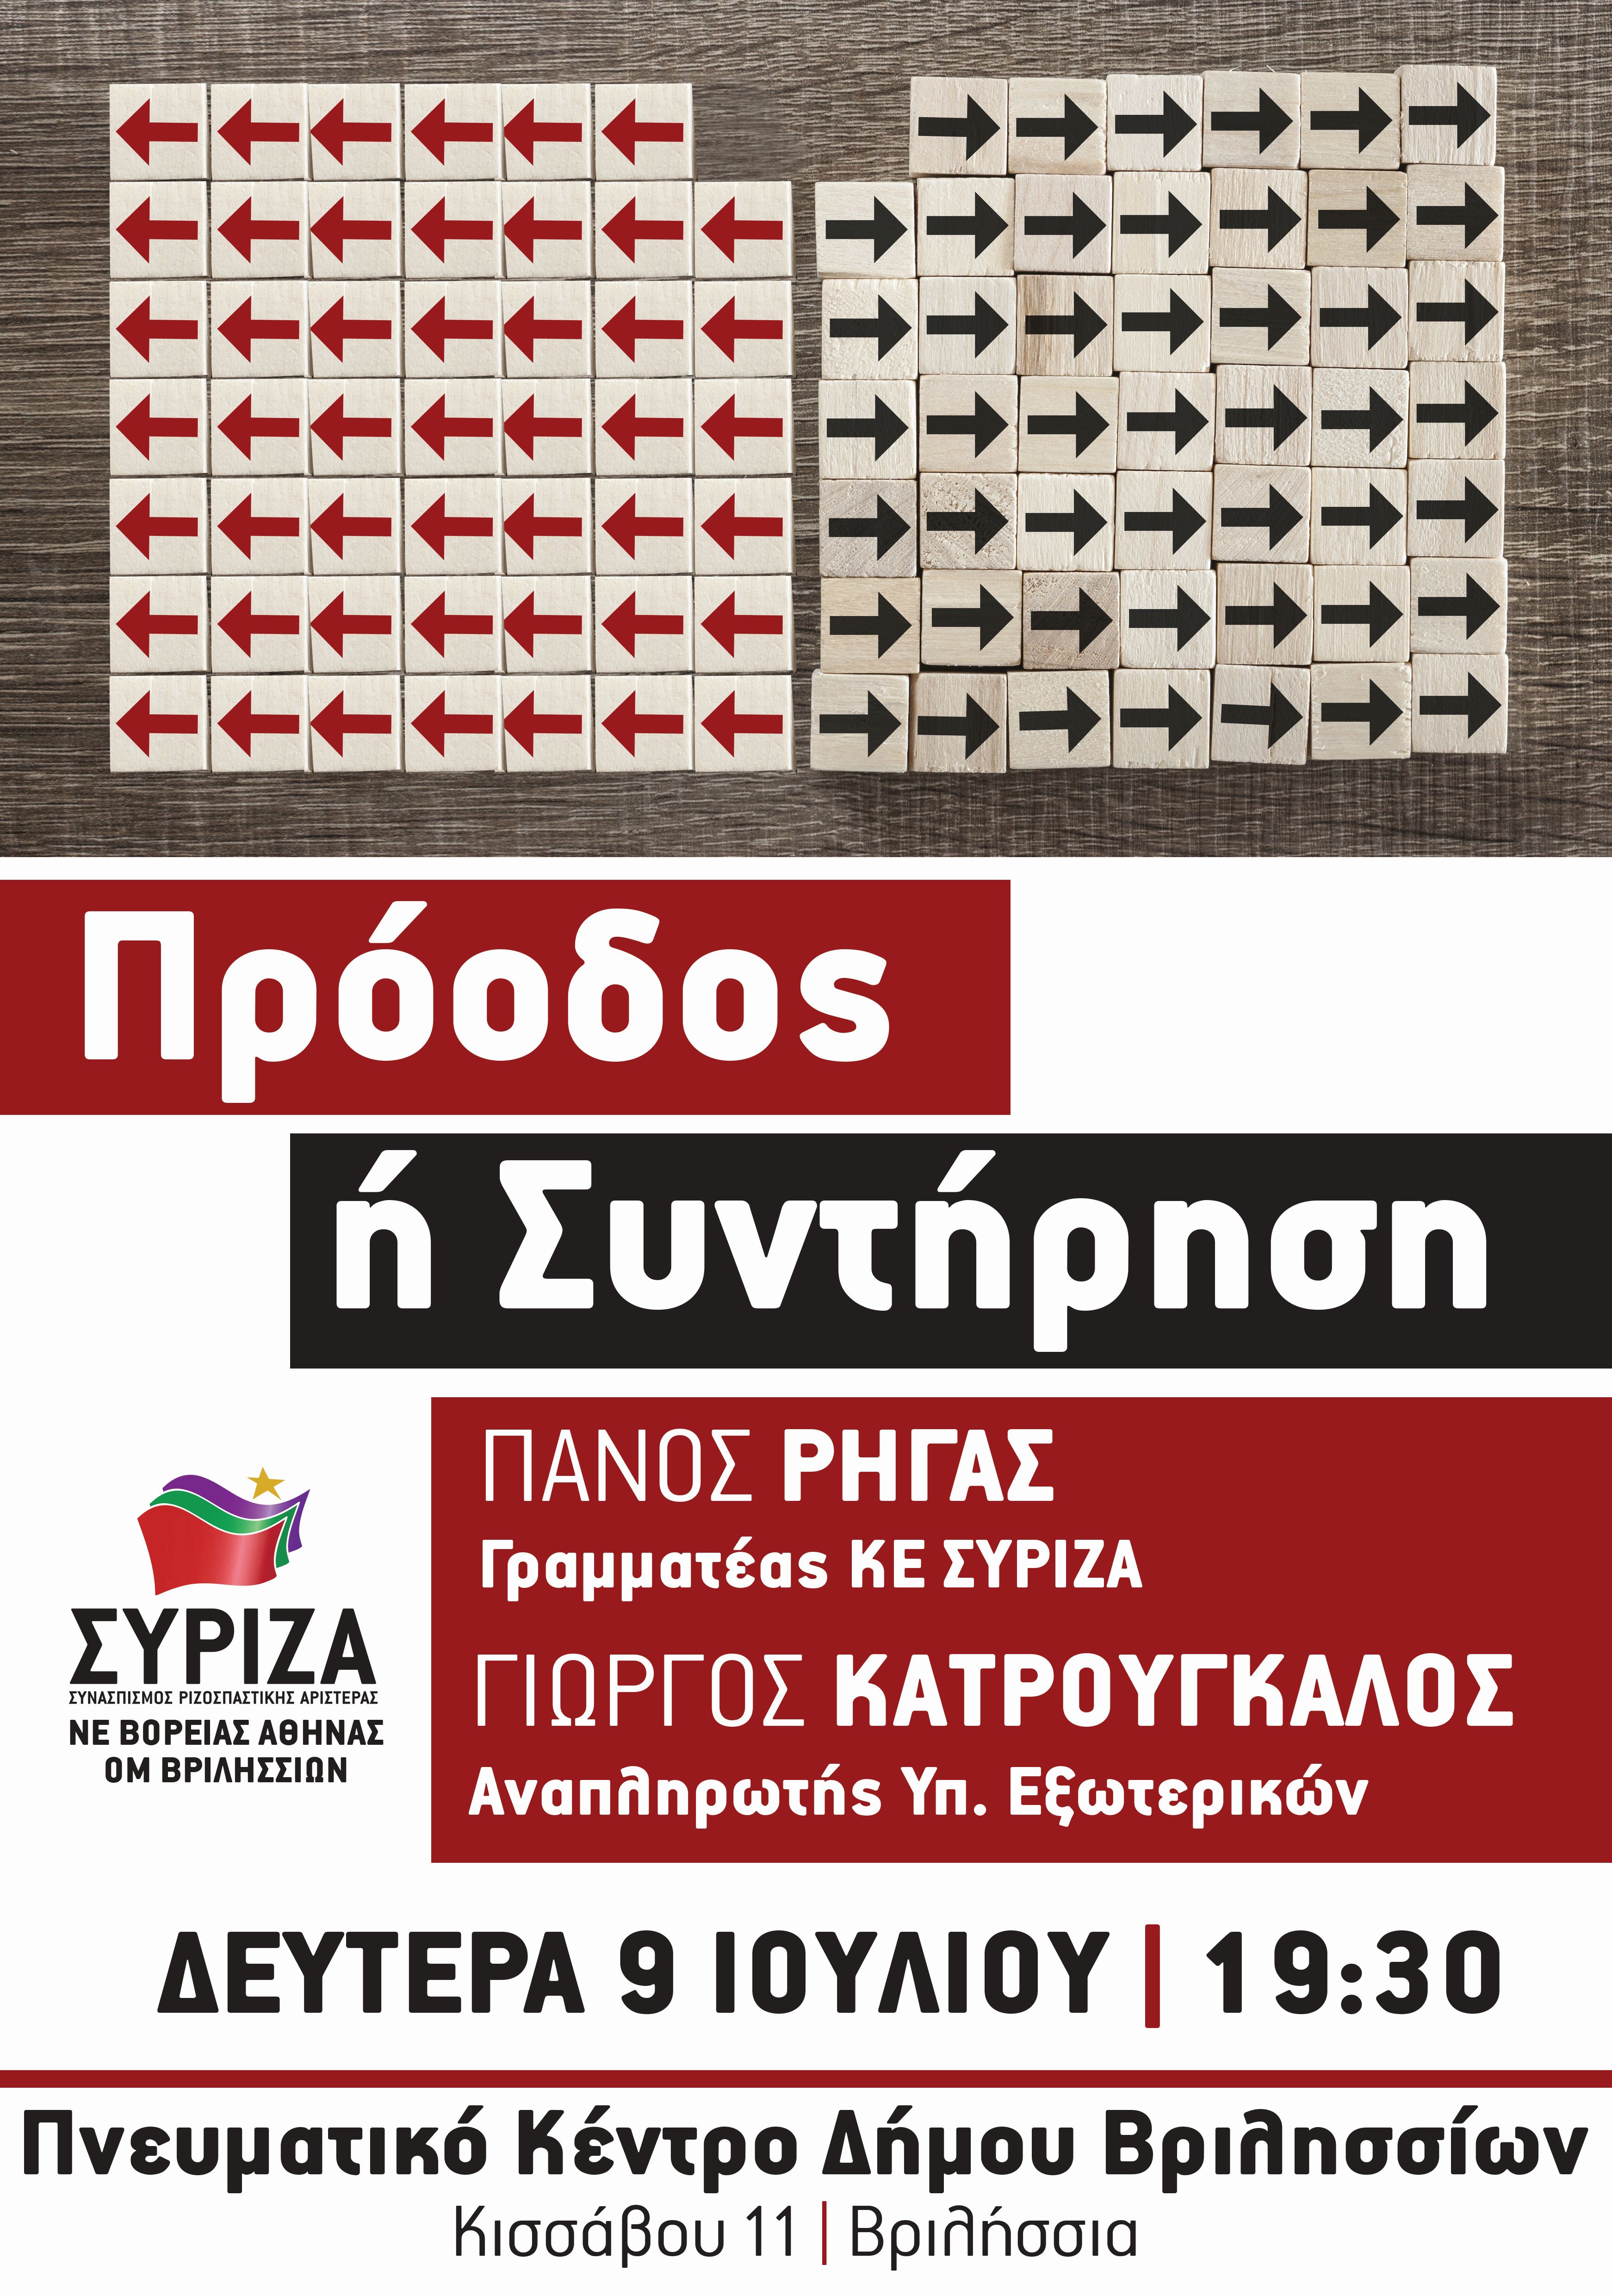 Ανοιχτή πολιτική εκδήλωση της ΝΕΒΑ και της ΟΜ Βριλησσίων του ΣΥΡΙΖΑ με τους Π. Ρήγα και Γ. Κατρούγκαλο 